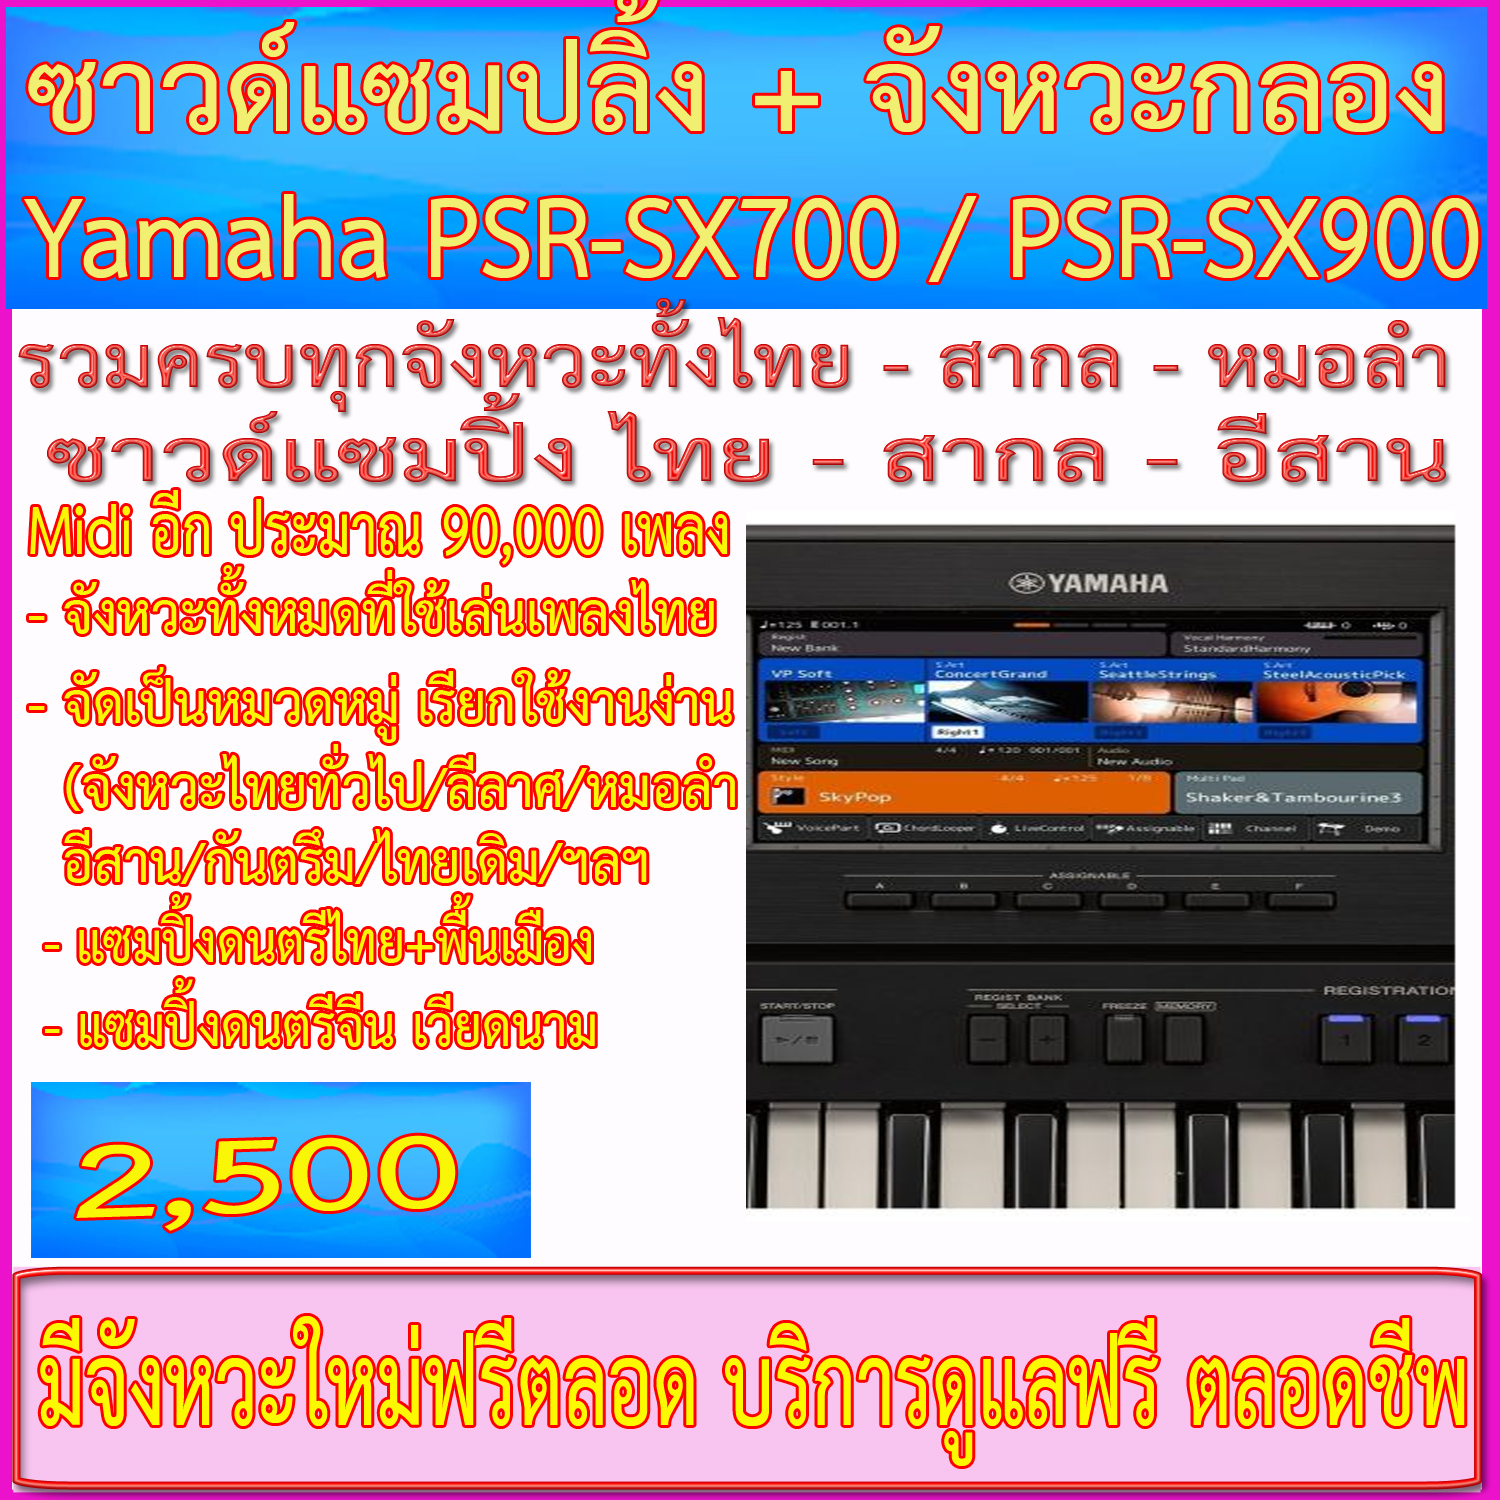 จังหวะ+ซาวด์แซมปลิ้ง+ไฟล์ Midi สำหรับคีย์บอร์ด Yamaha PSR-SX700 / Yamaha PSR-SX900 (บริการตลอดชีพ) ราคายุติธรรมที่สุด